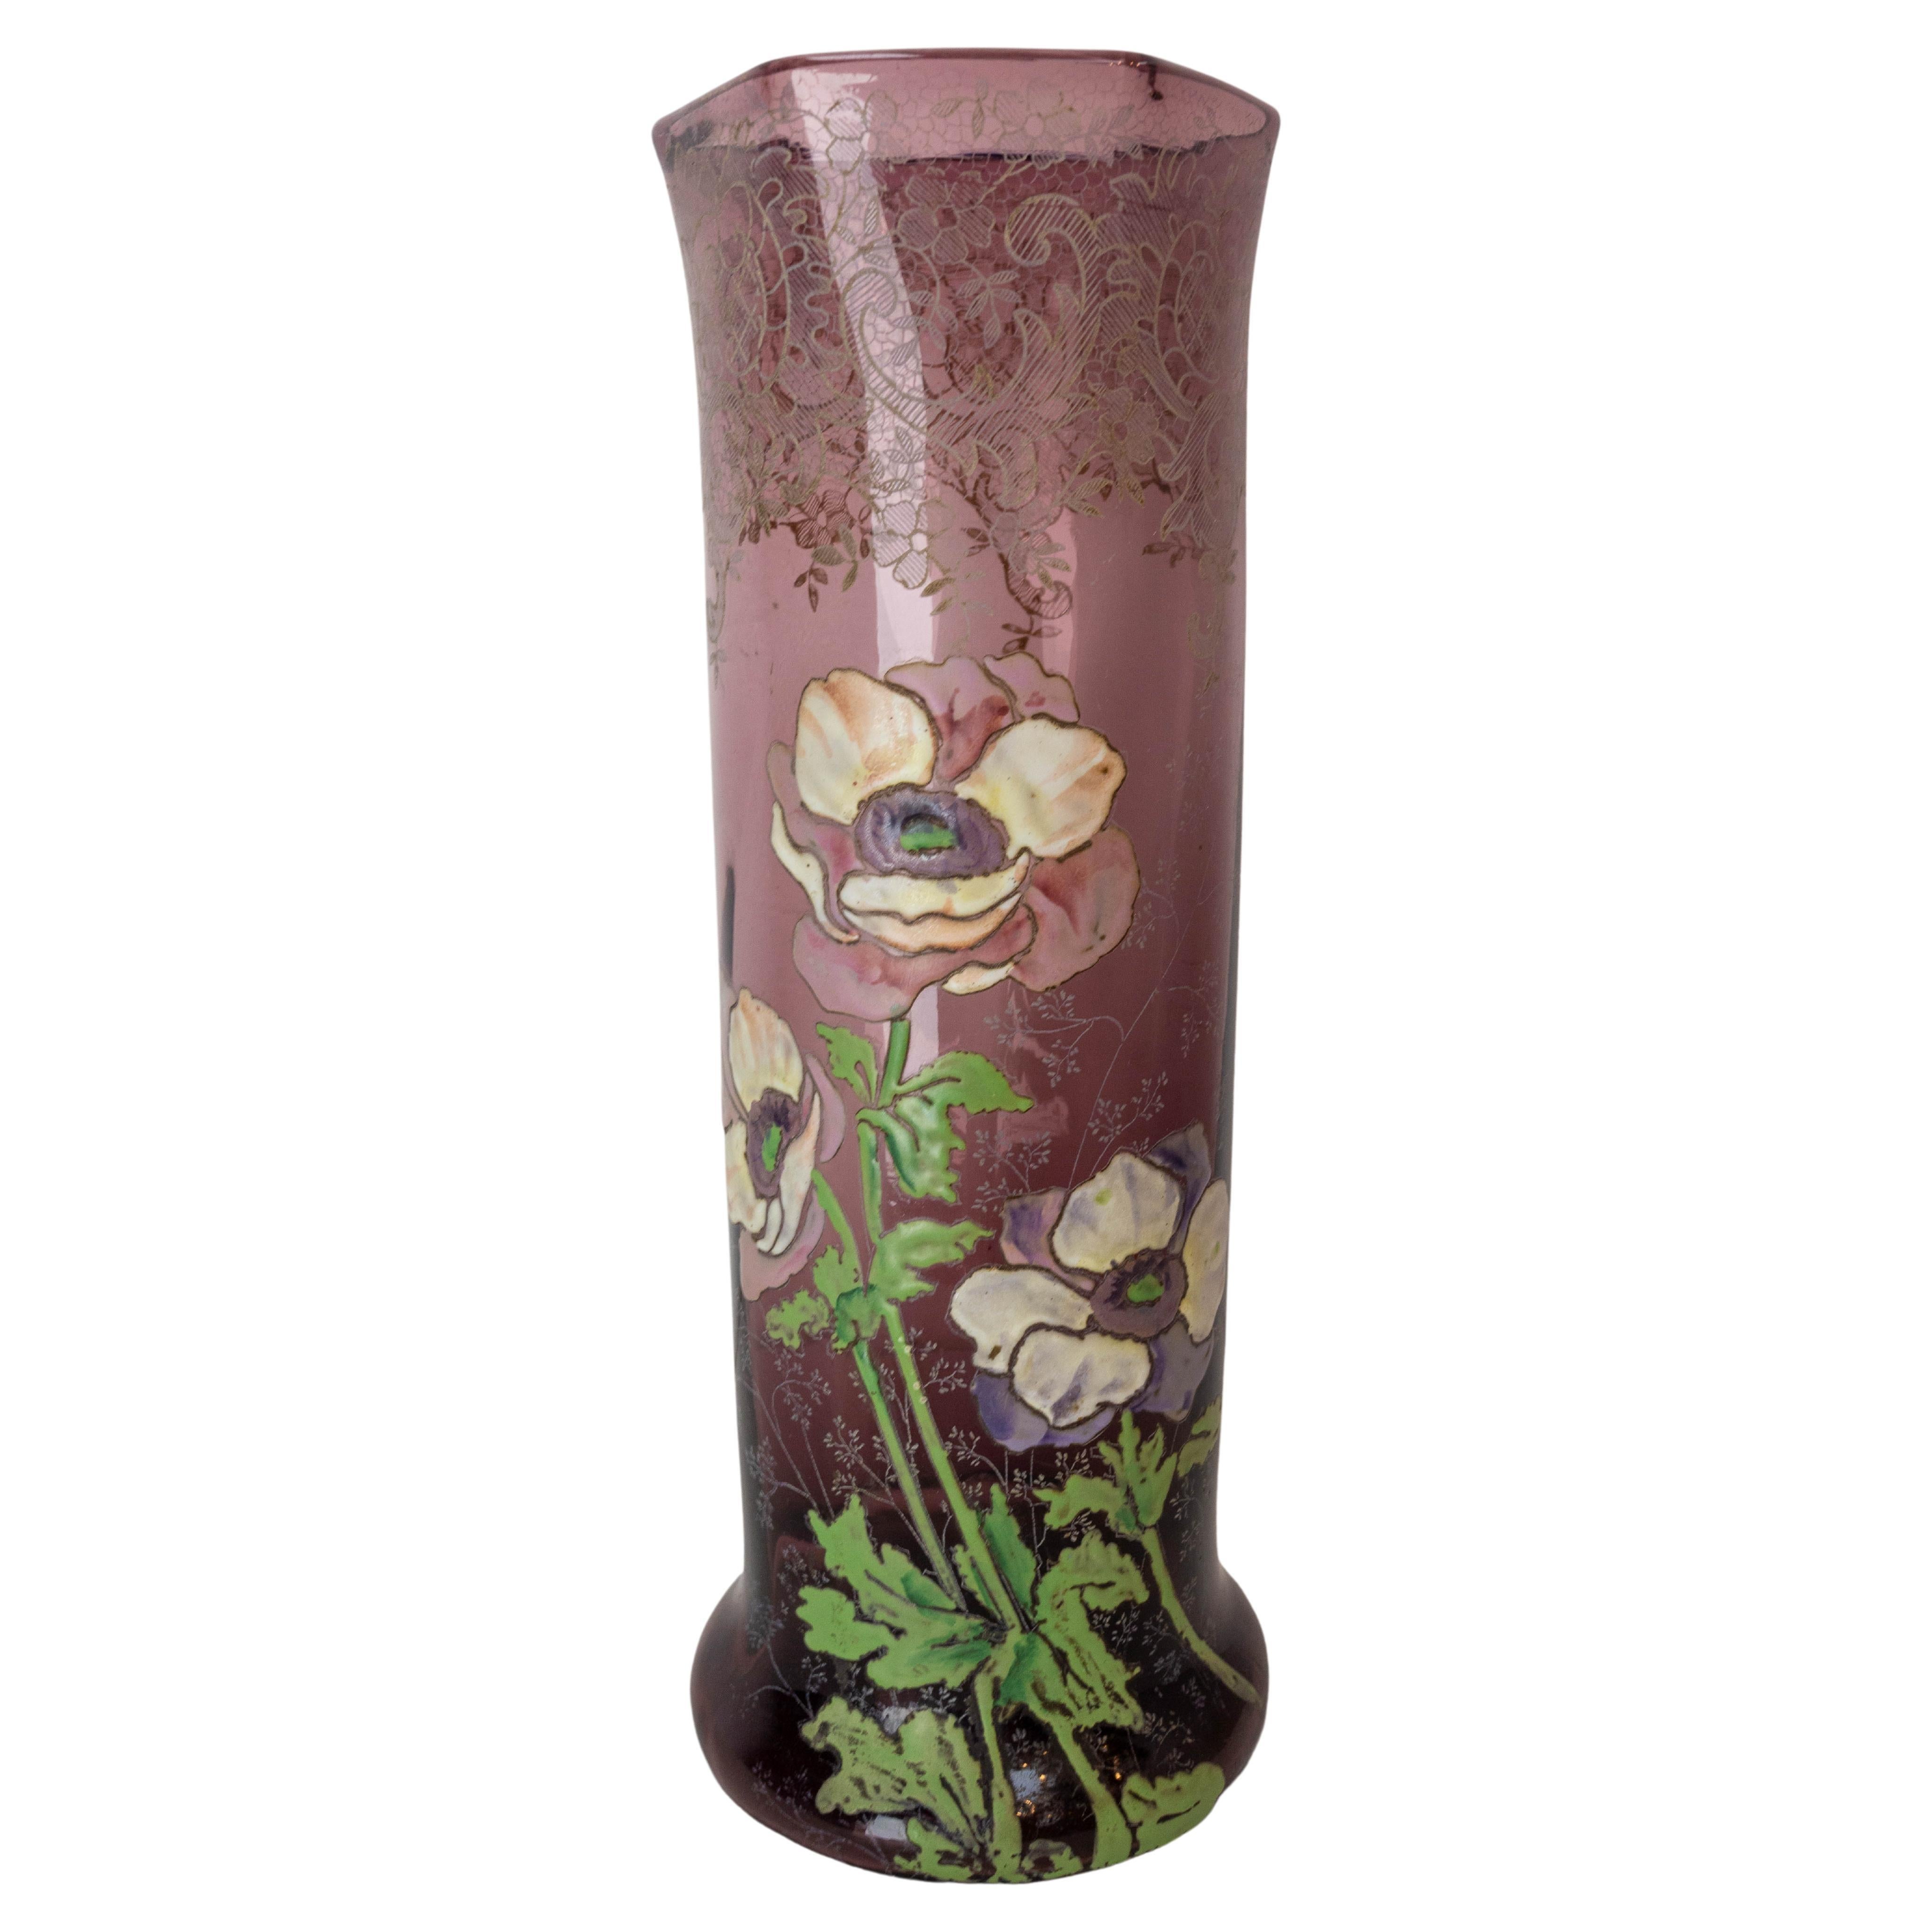 French Enamelled Glass Vase with Flowers Decoration Legras Art Nouveau, c. 1900